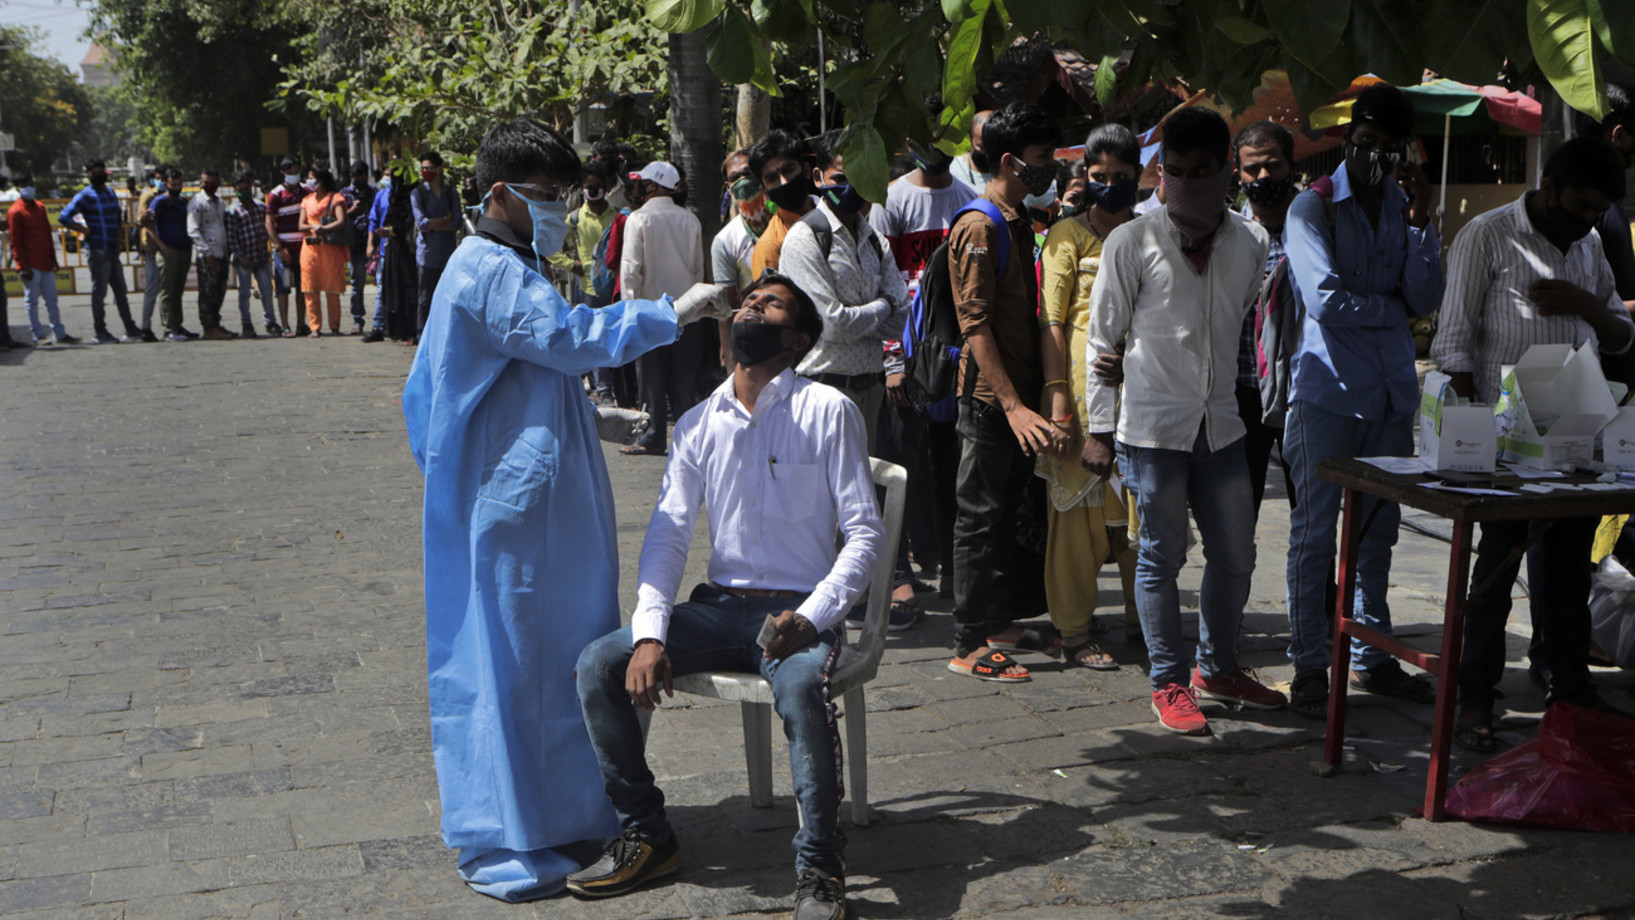 In Mumbai, Indien, stehen die Menschen am Freitag, 2. April 2021, Schlange für einen Covid-19-Test. (Keystone/AP Photo, Rajanish Kakade)